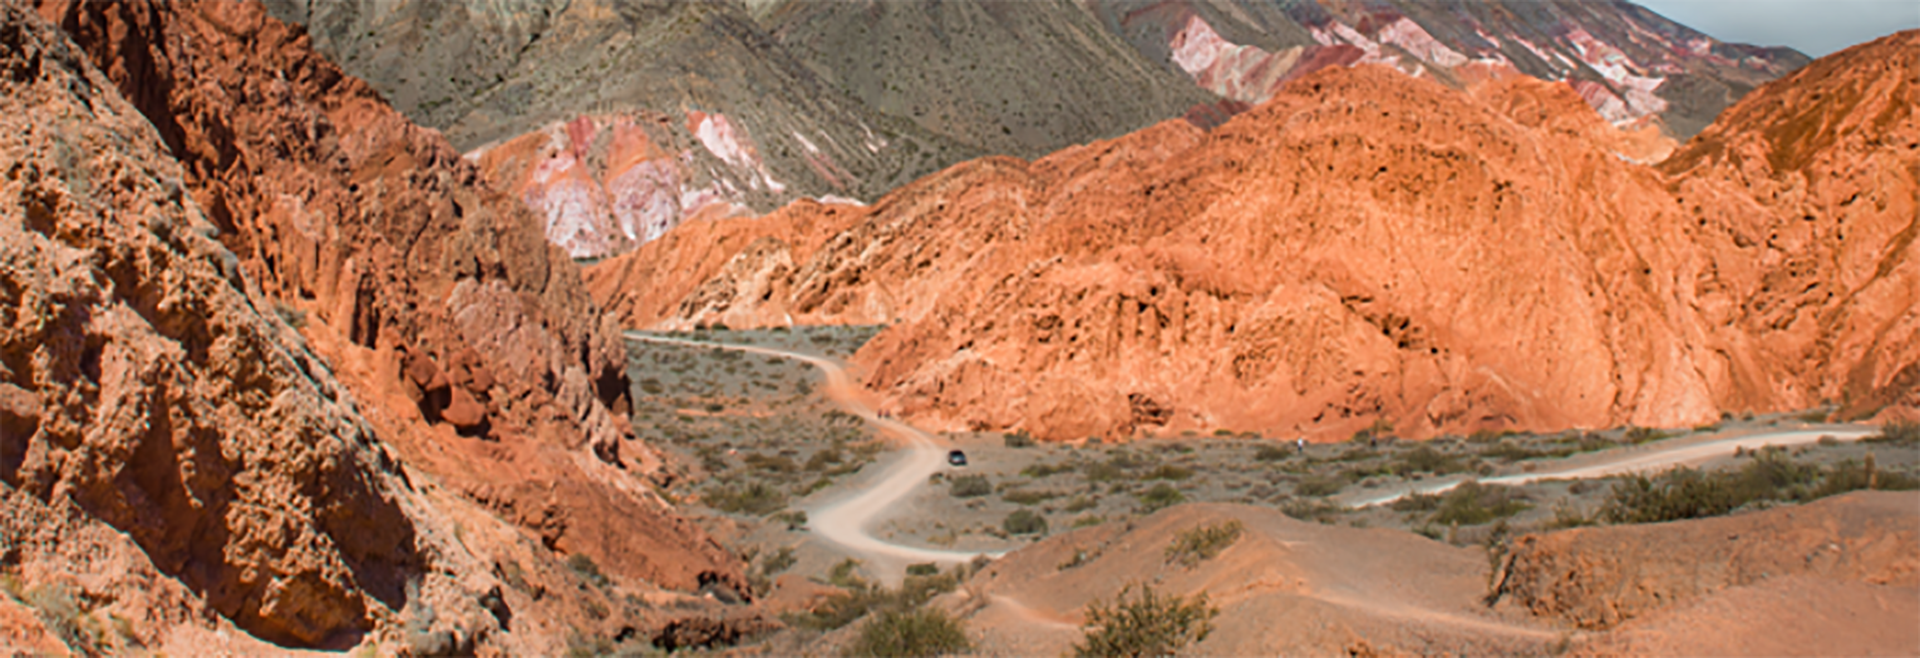 Los cerros colorados dibujan paisajes casi irreales (Foto: Ministerio de Turismo de Jujuy)